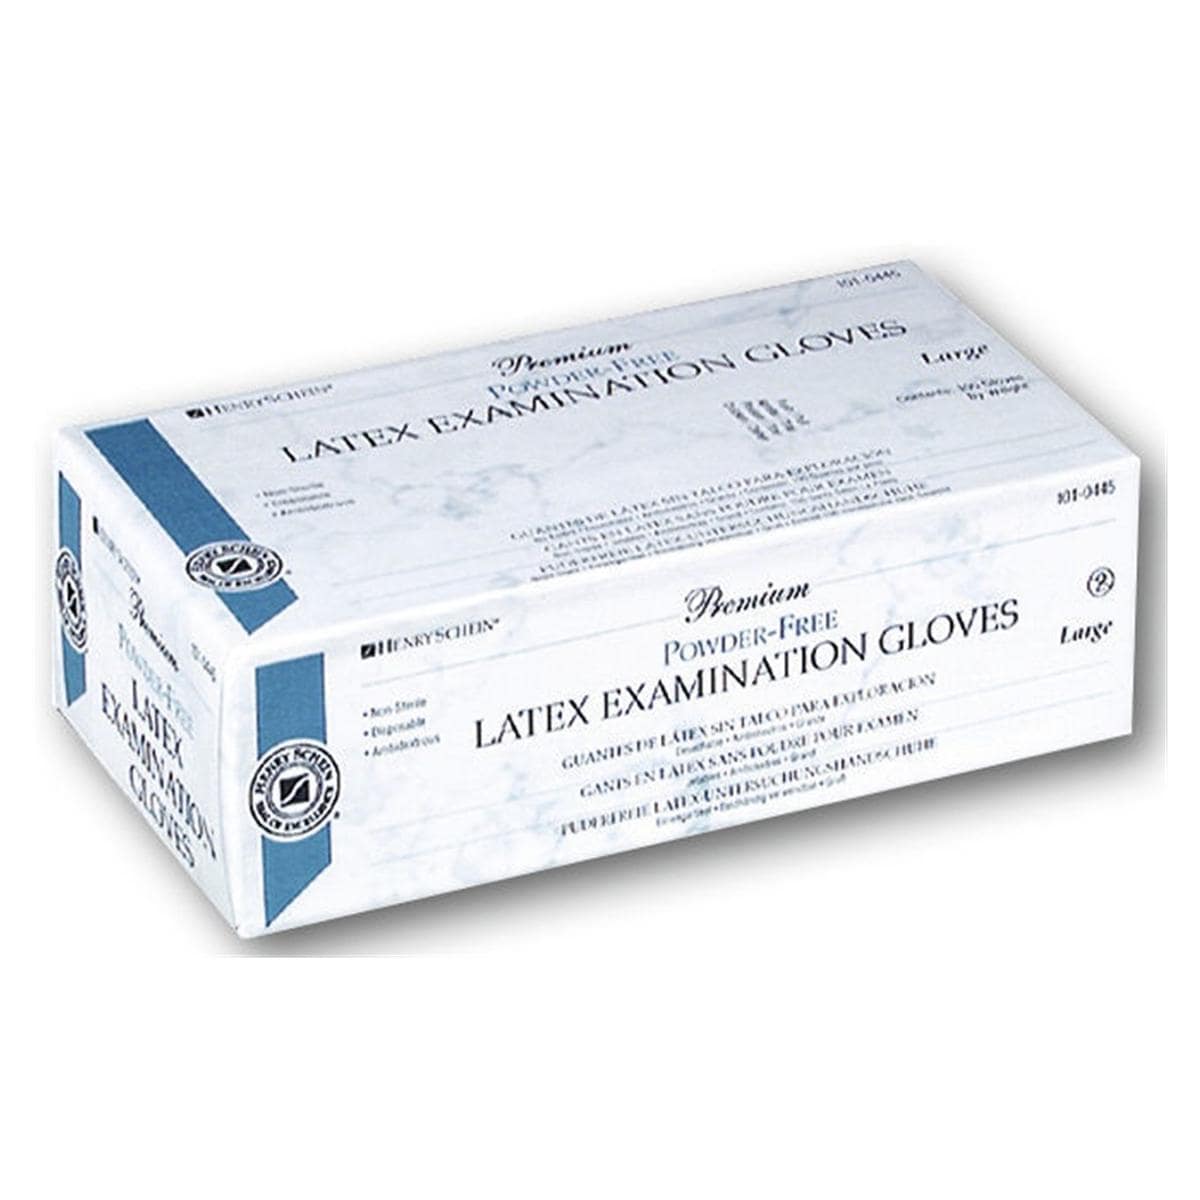 Premium Latex Examination Gloves - S - 100 pcs